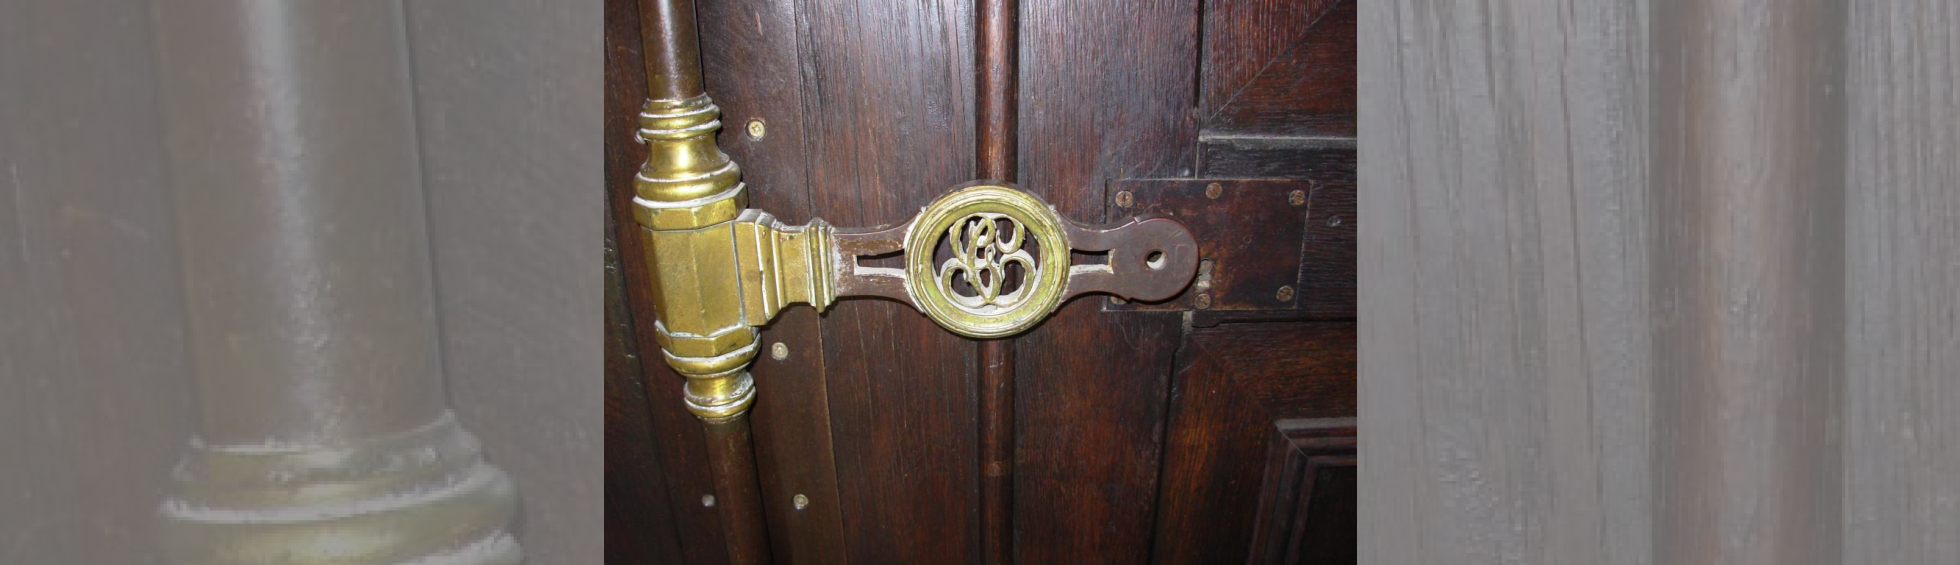 Détail de la crémone en bronze de la porte d'entrée avec le S et le G entrelacé rappelant le nom du propriétaire Sa Garriga